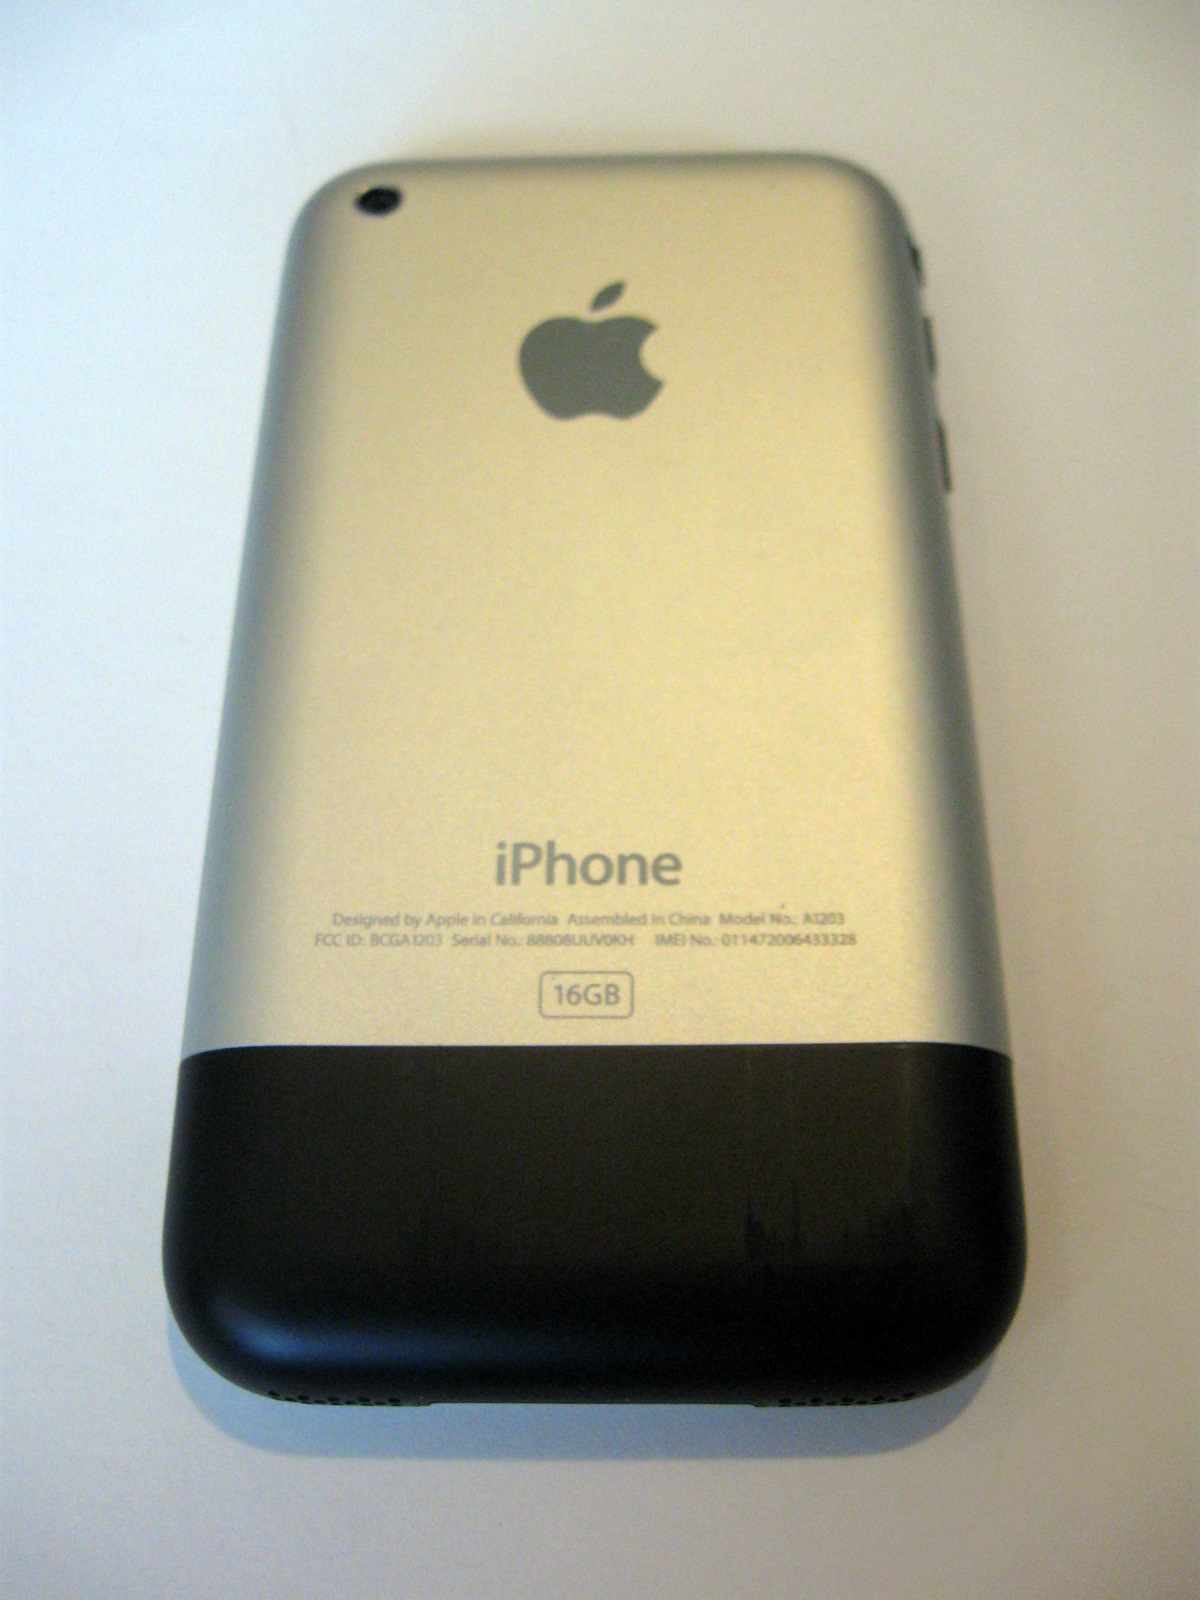 iPhone 2G 16GB | iPh